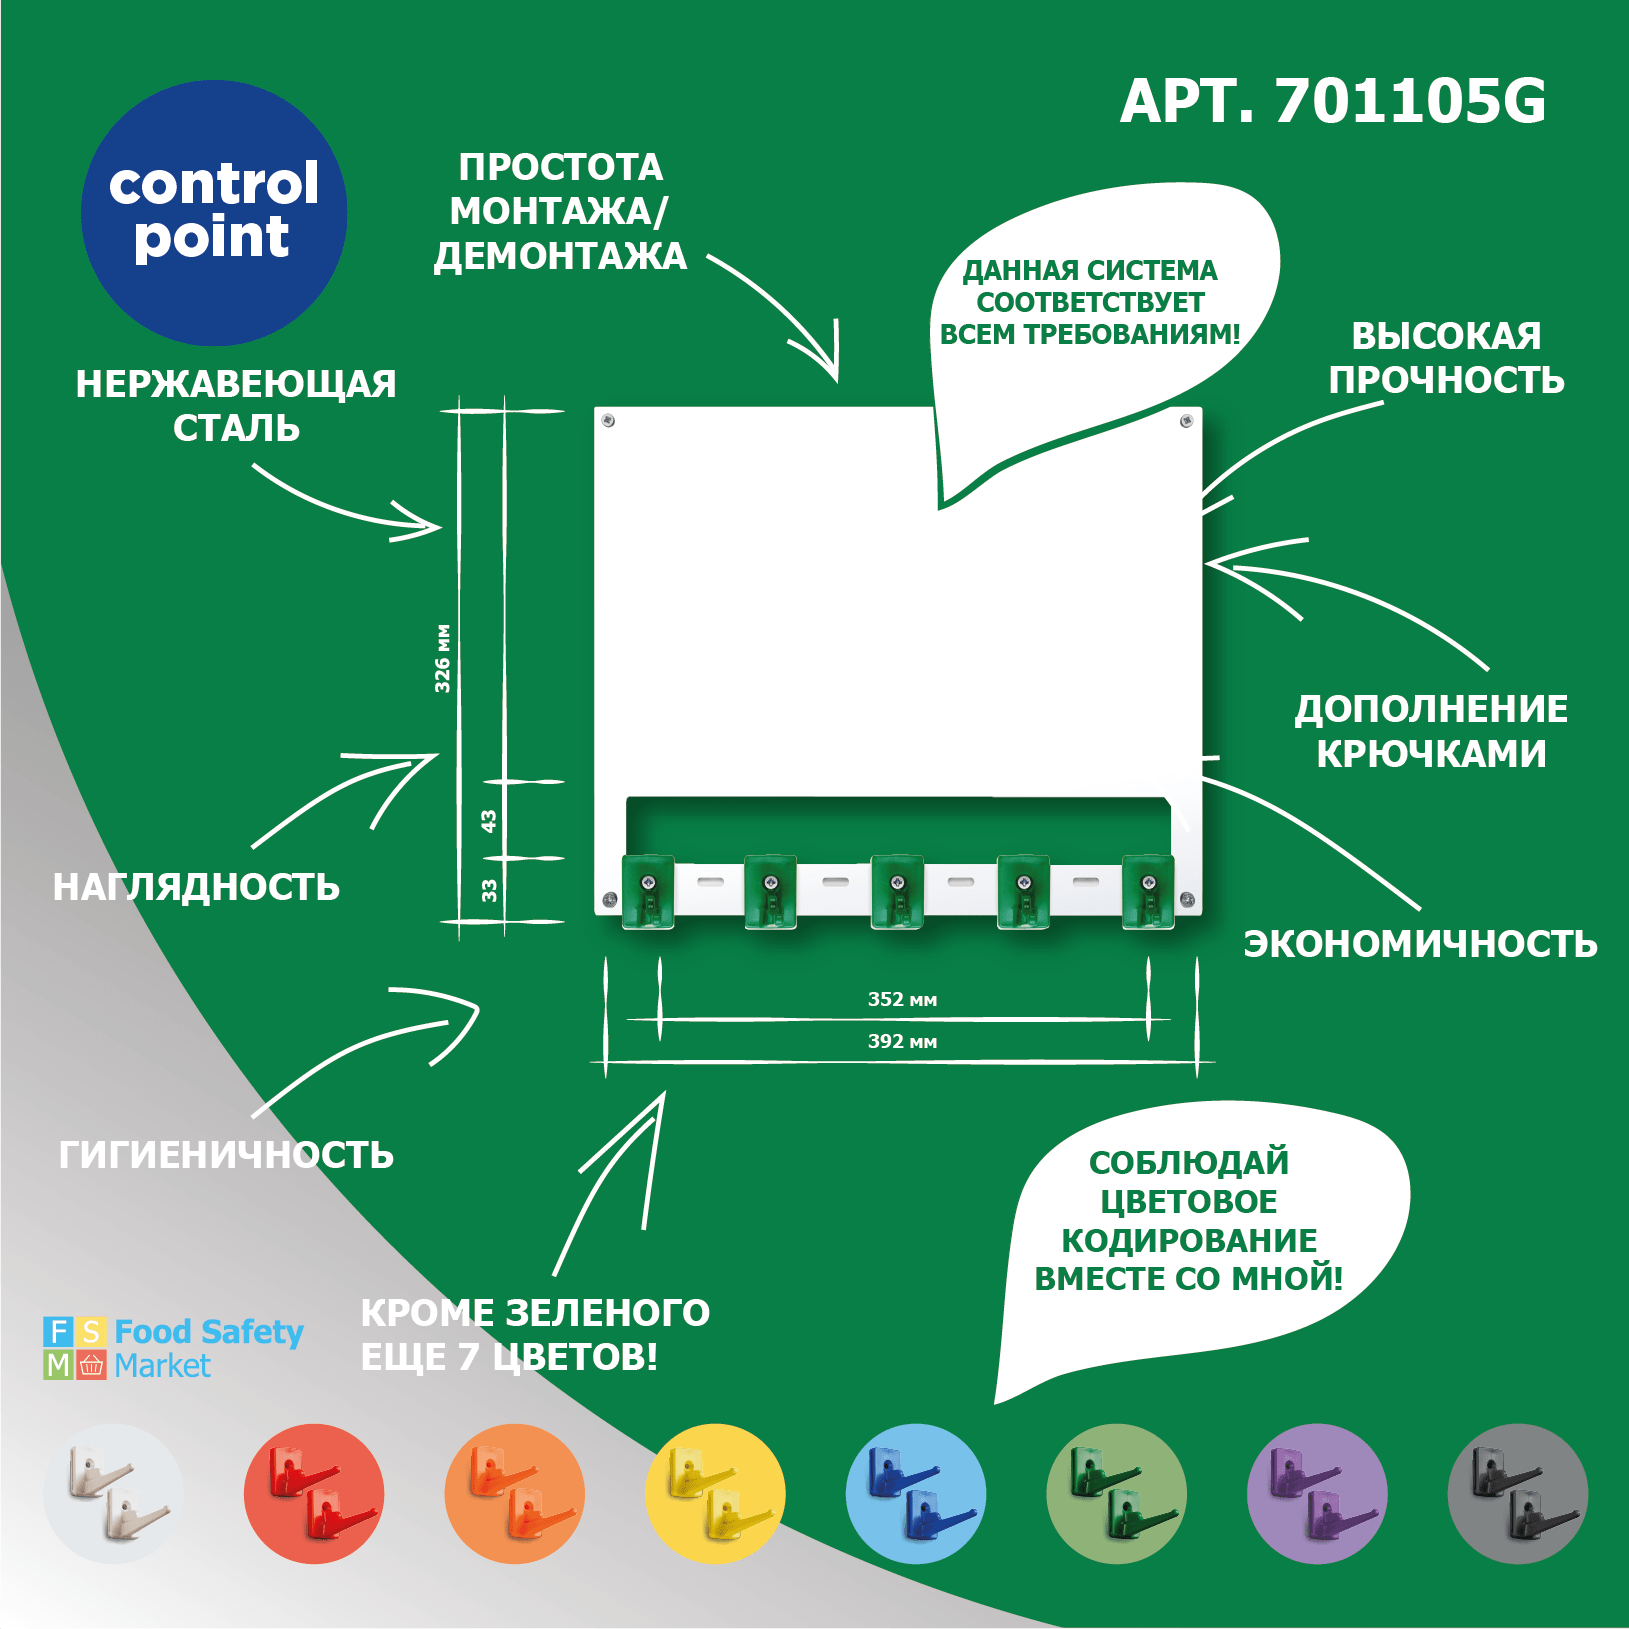 Система хранения (органайзер) Control Point на 5 поз. с инф.полем из стали, зеленый + арт.SAN0023-4